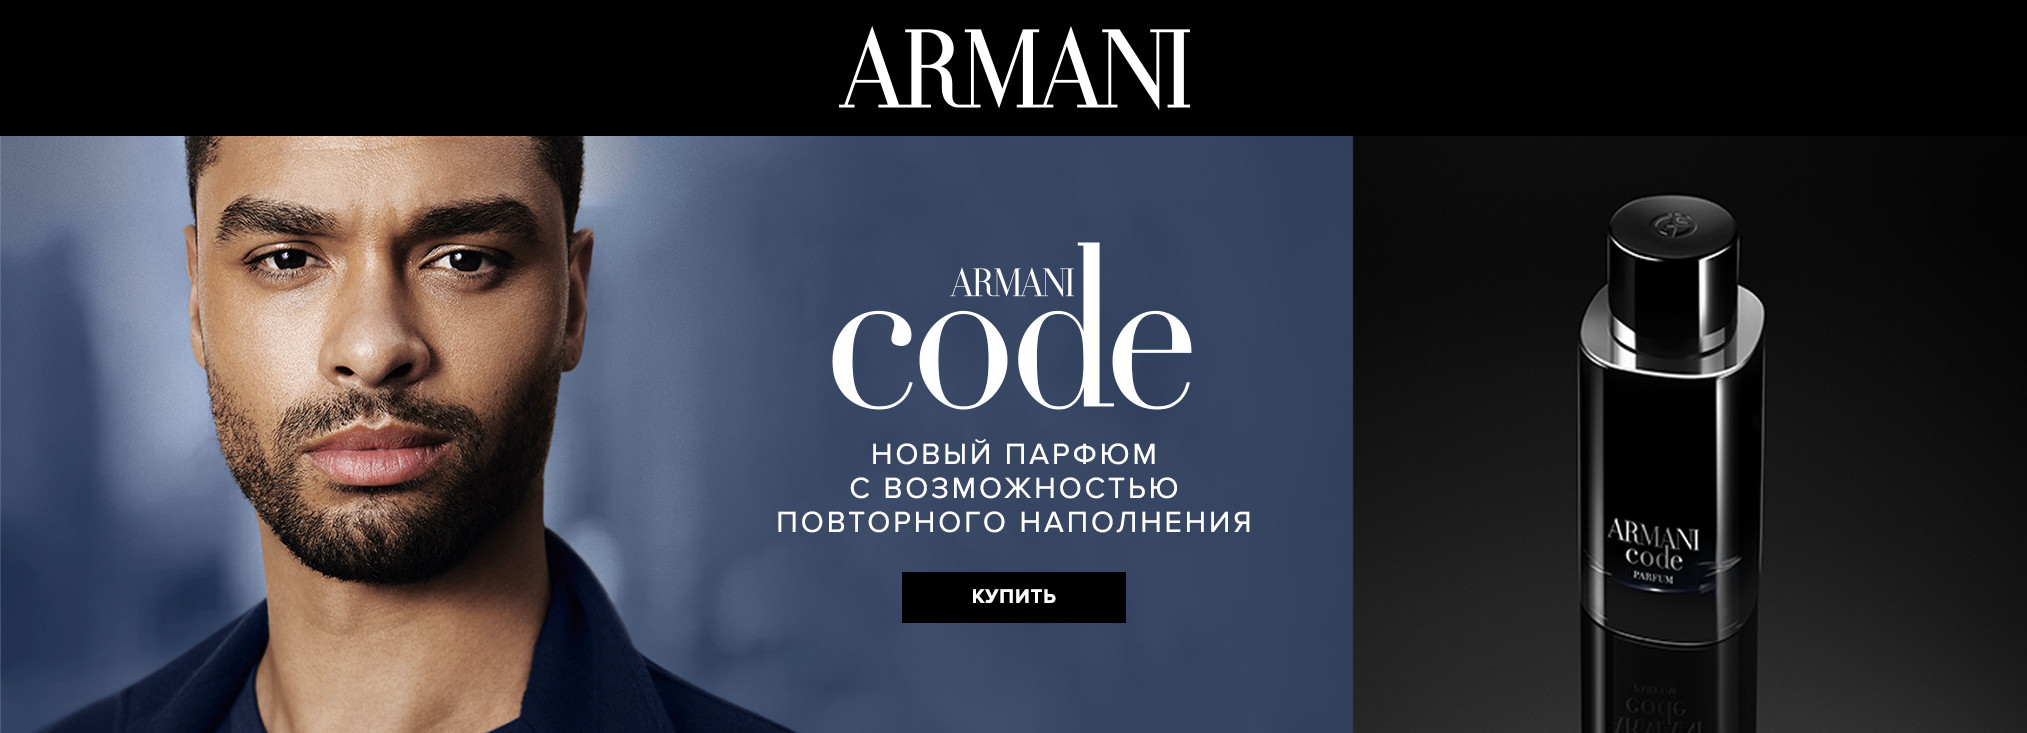 Giorgio Armani Brand Page